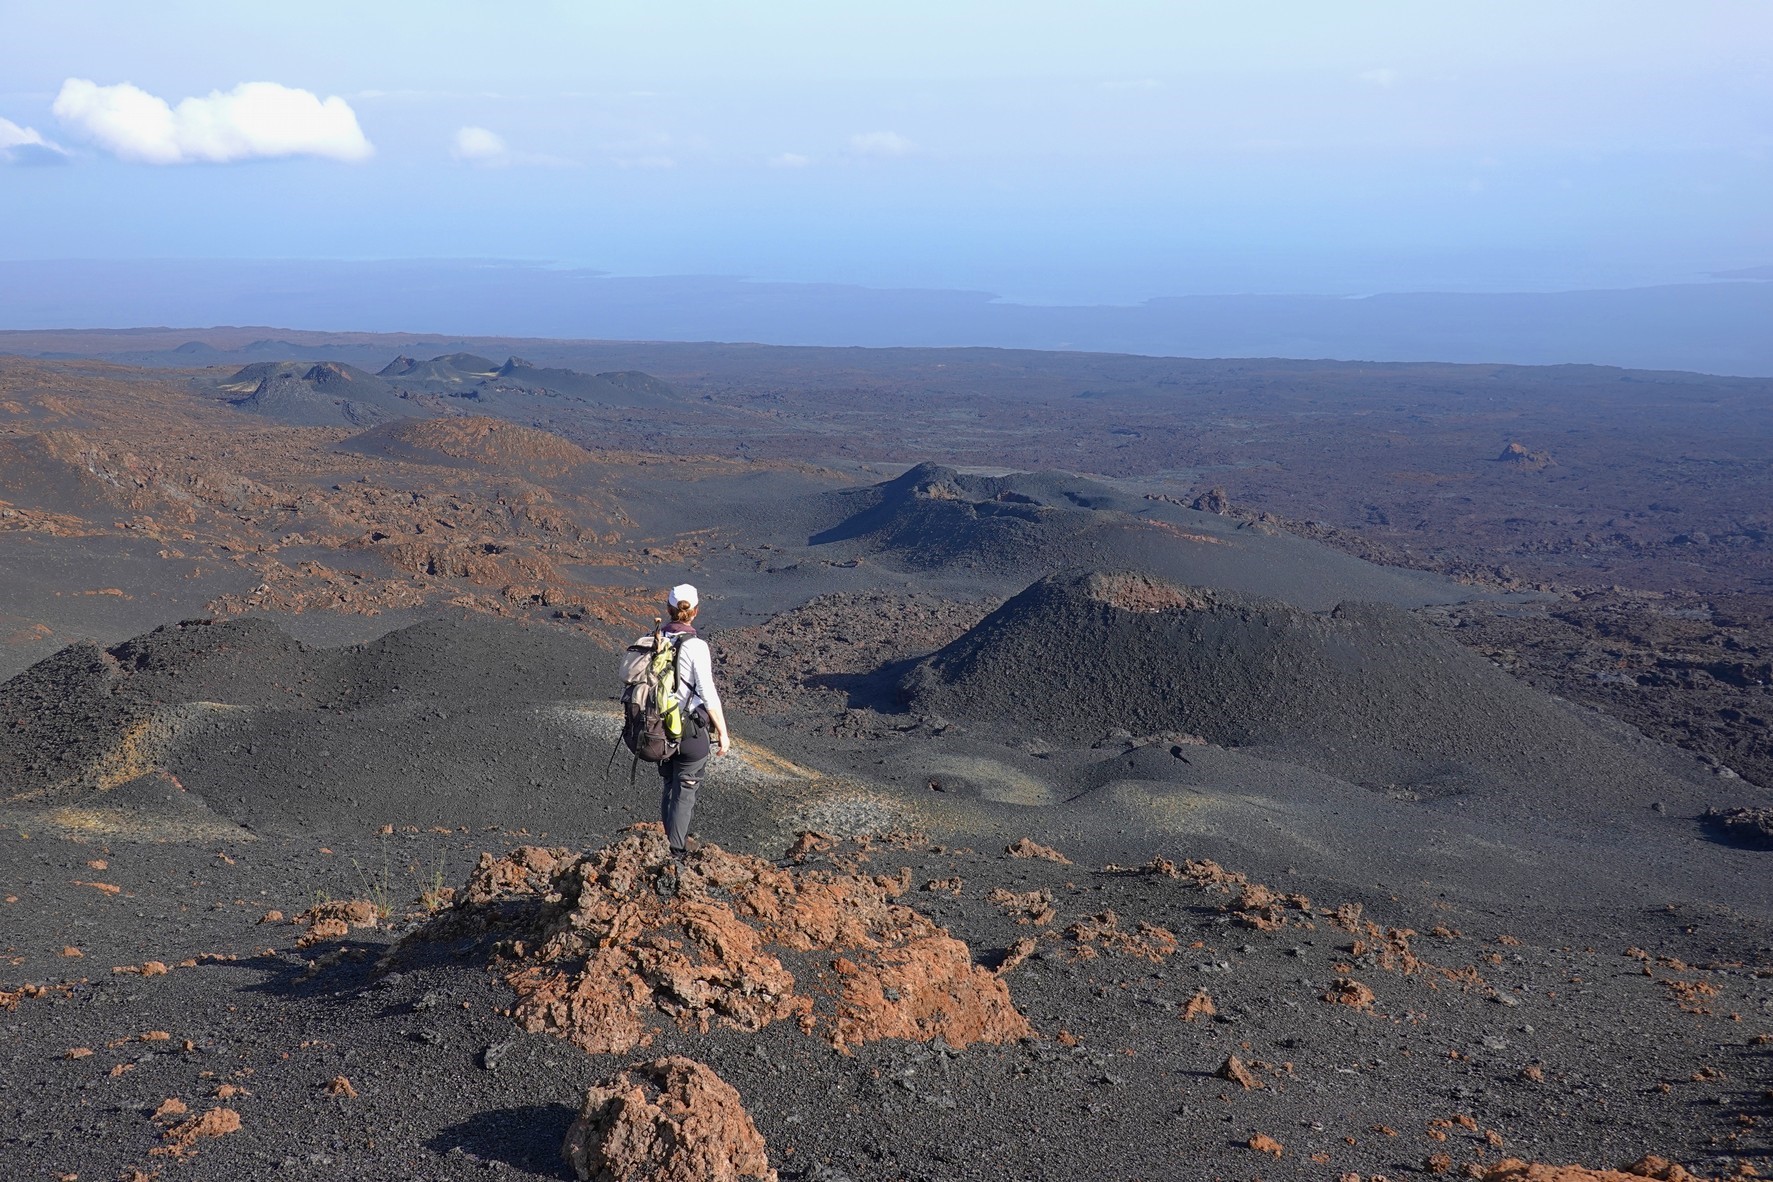 Vulcanólogos investigan la erupción de 2018 del volcán Sierra Negra, Isla Isabela – Galápagos